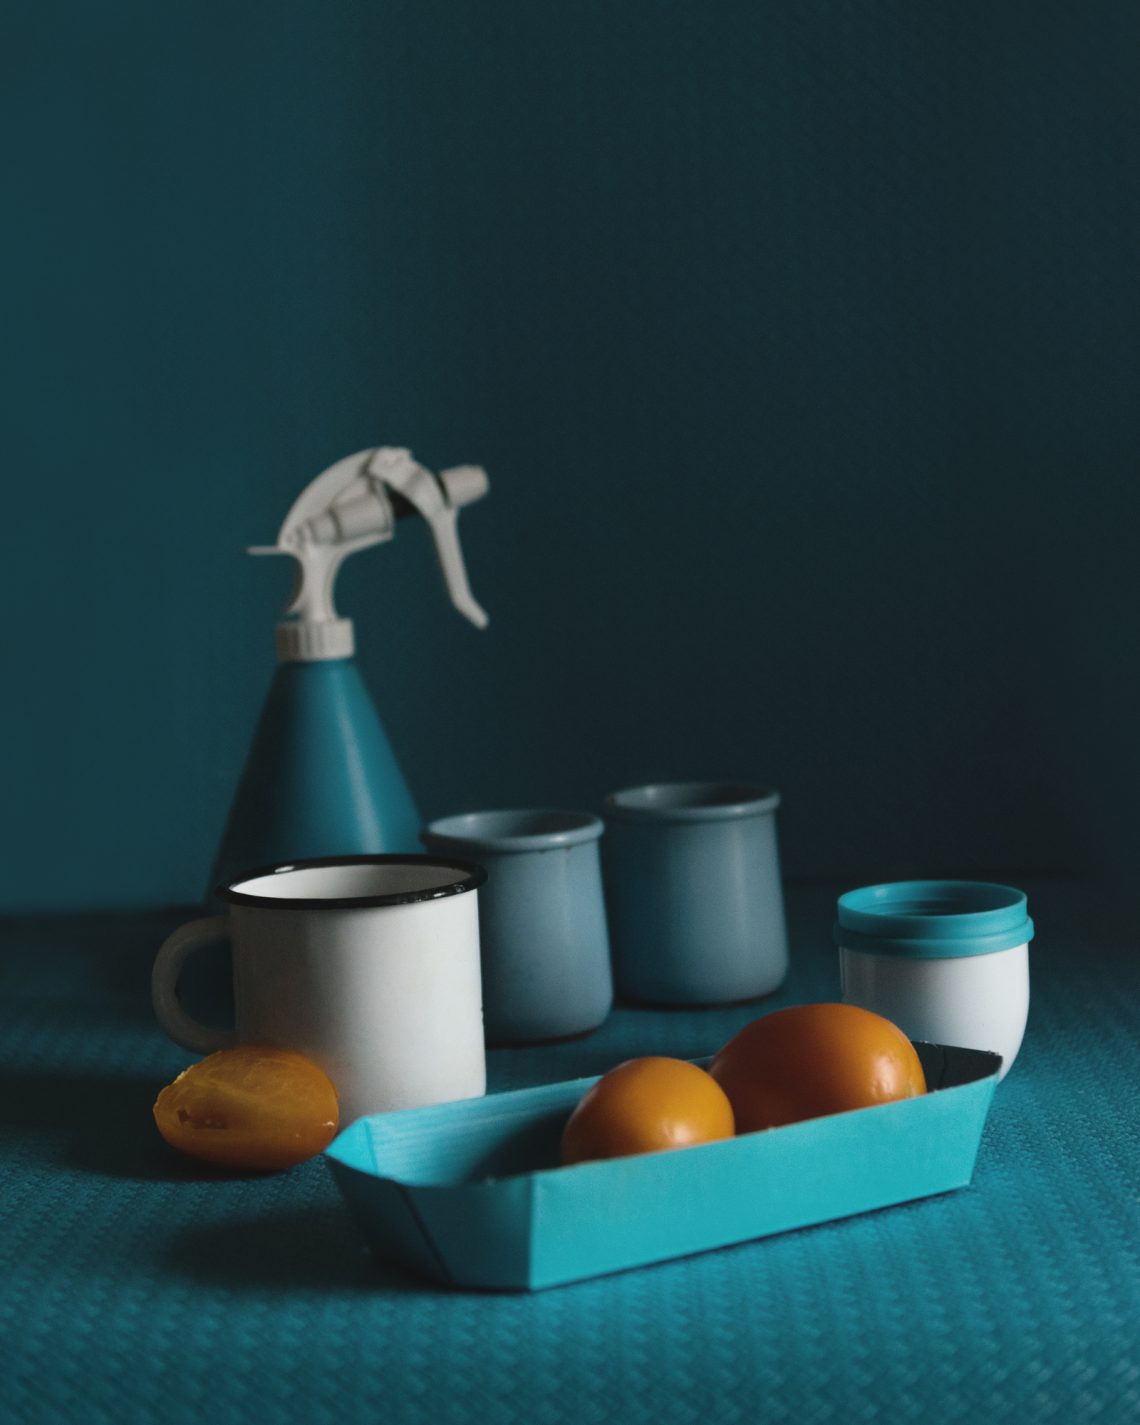 Фото хурмы и посуды в бирюзовом цвете